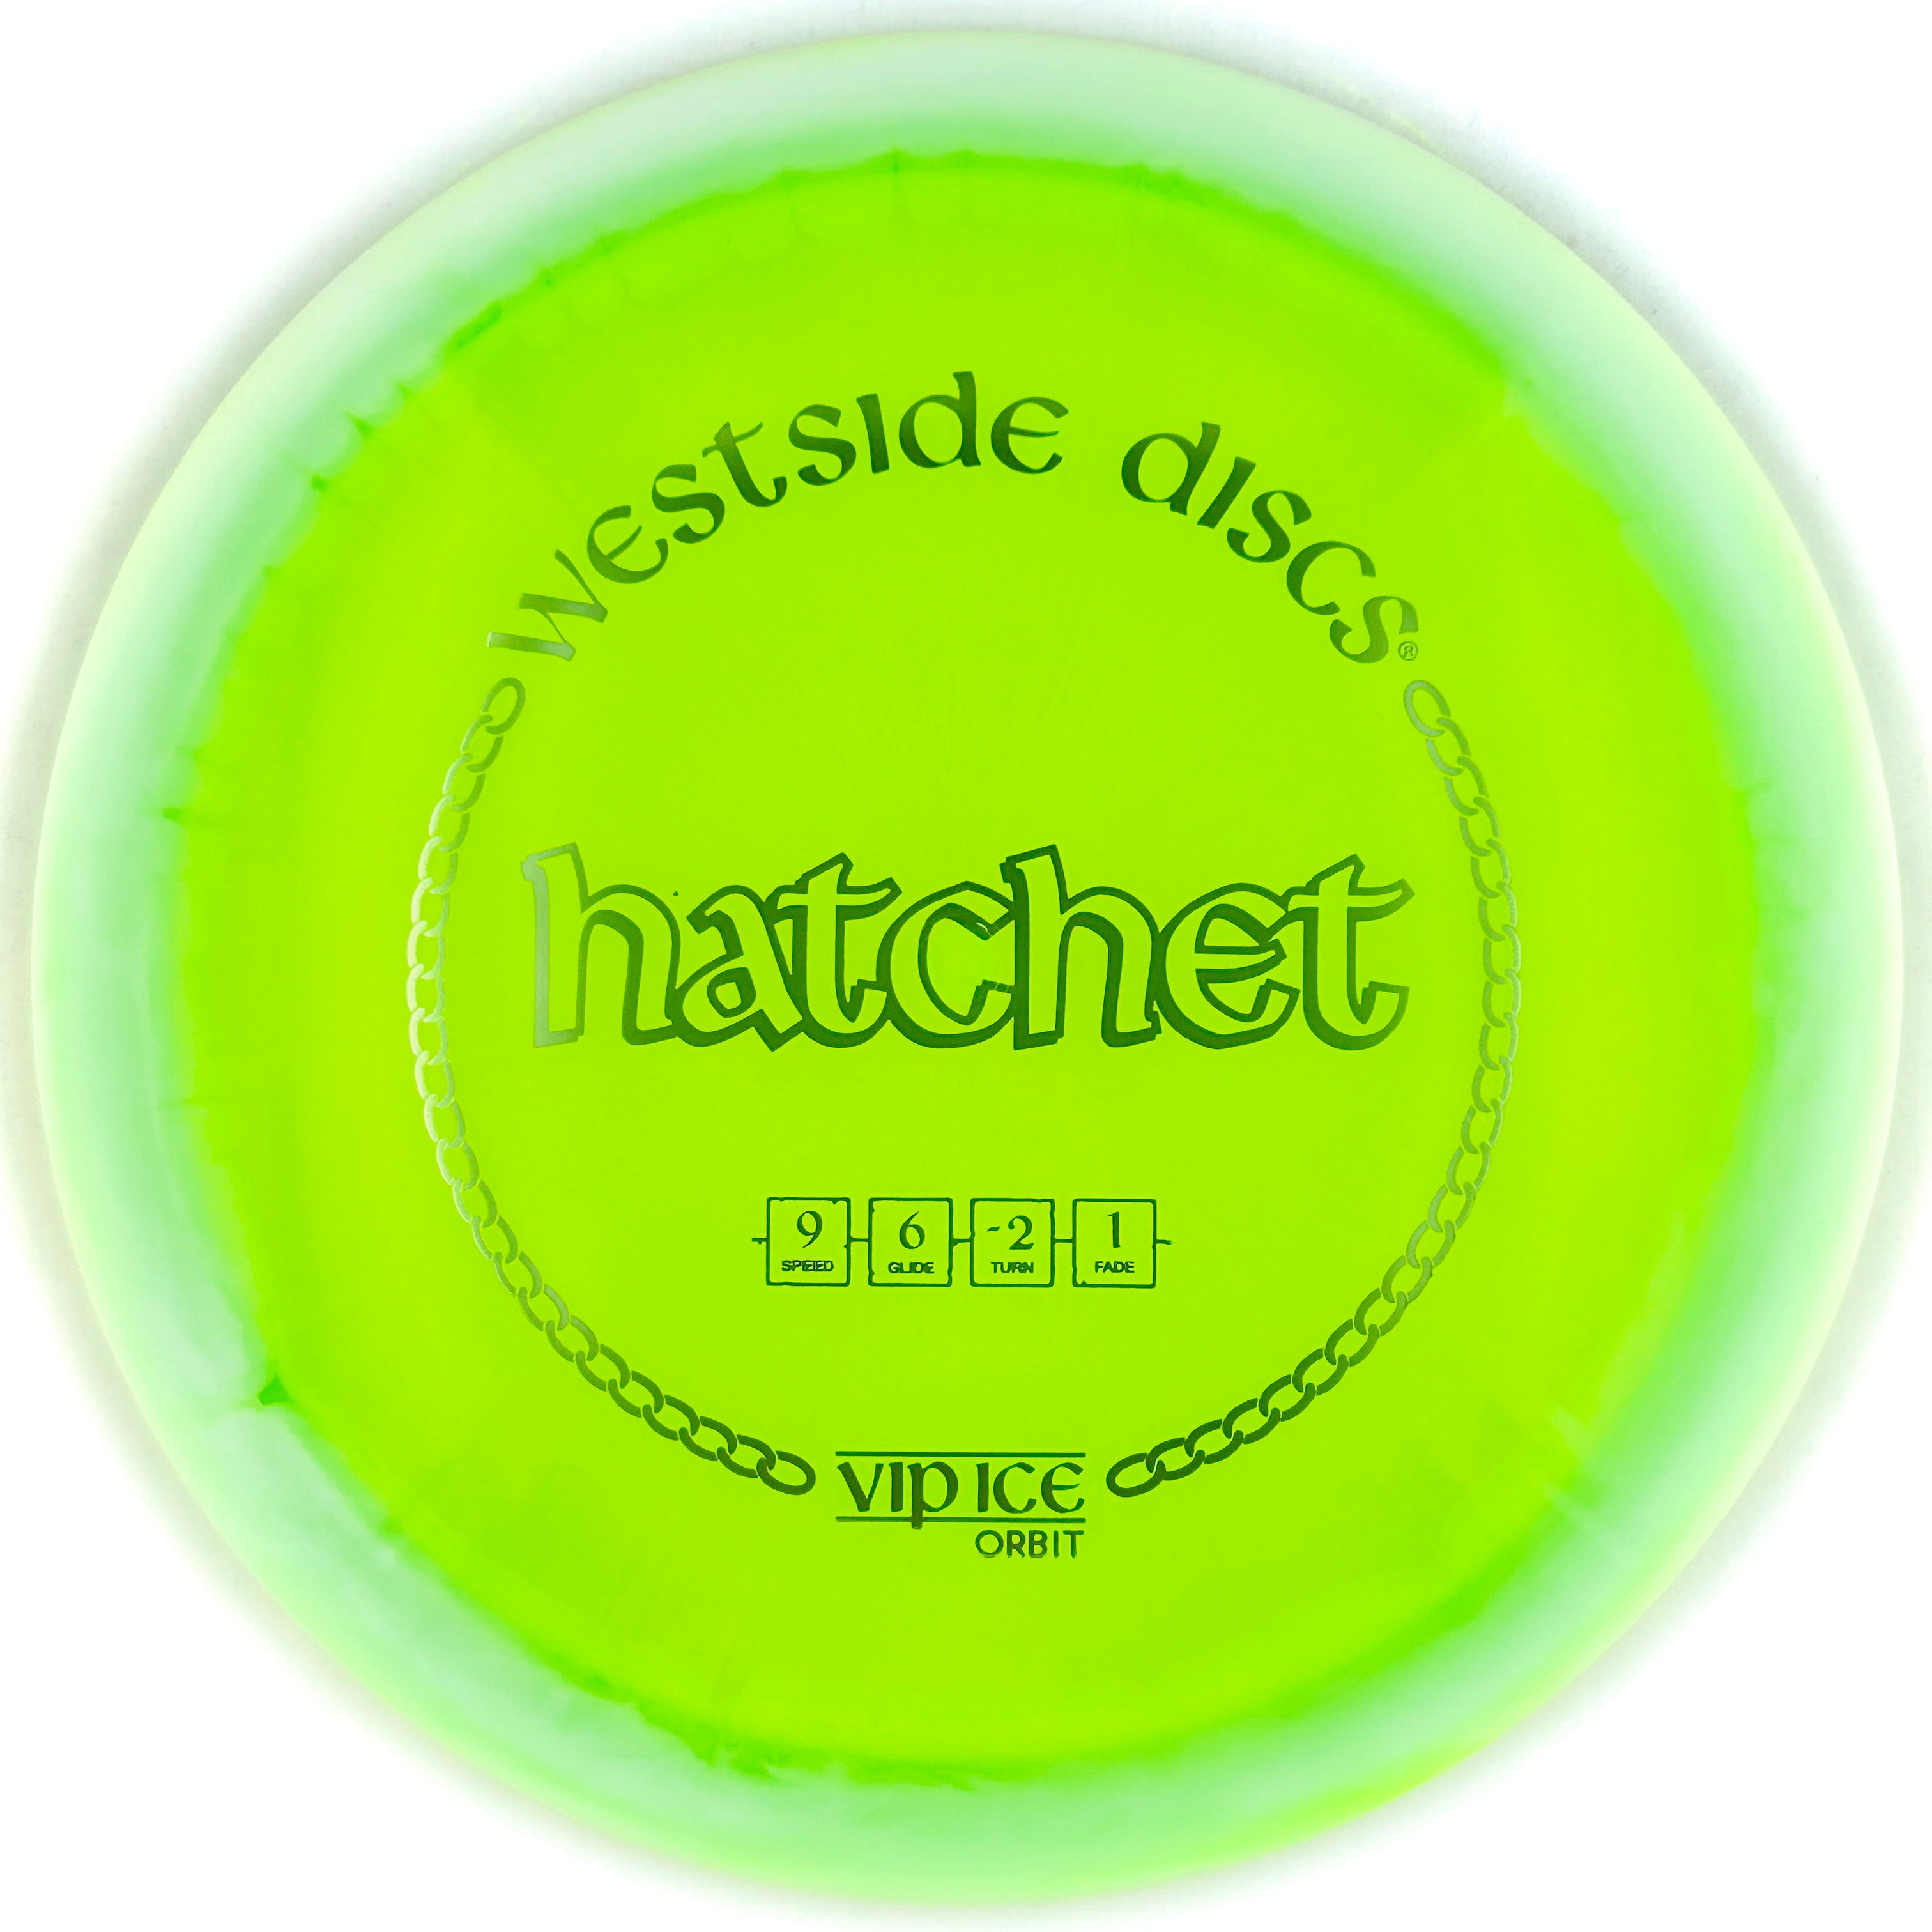 Westside Discs VIP Ice-Orbit Hatchet (Distance Driver)